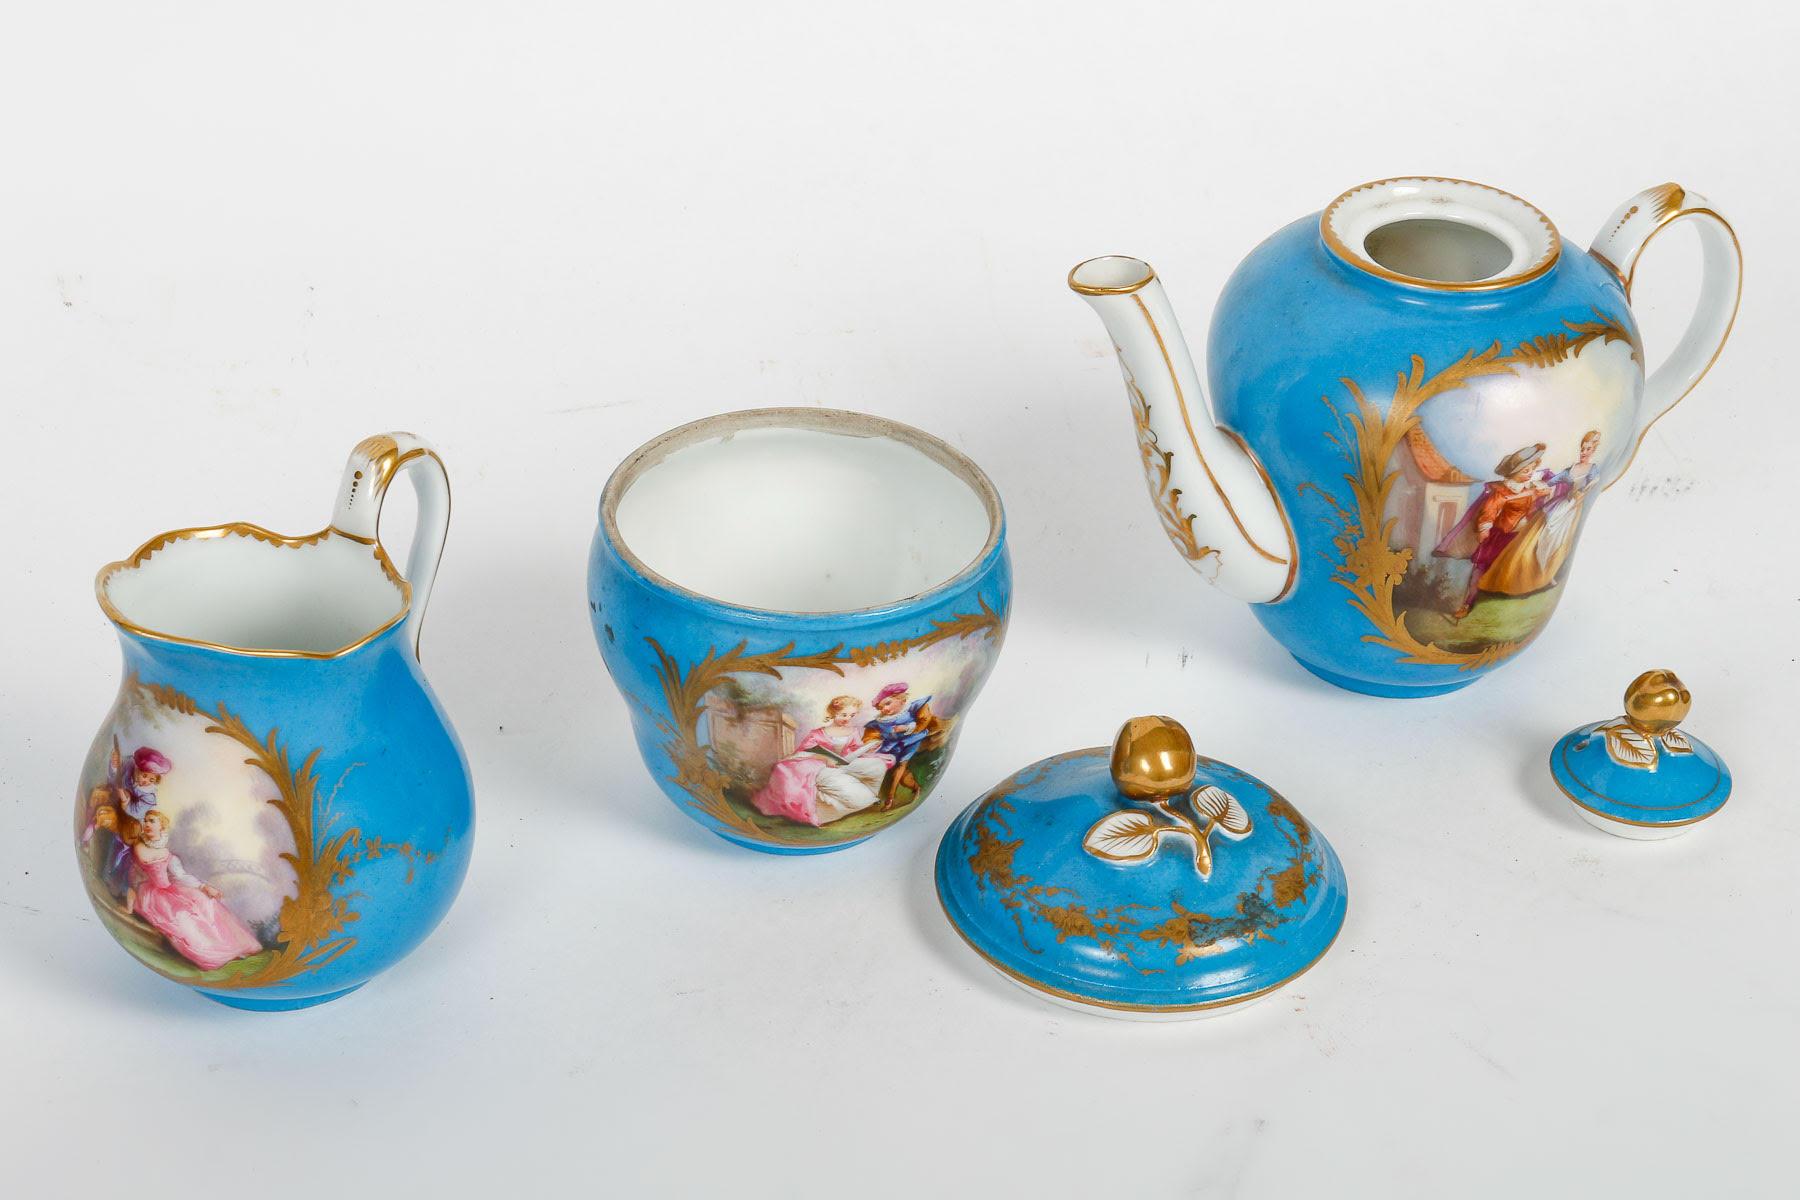 Tête-à-tête, Tea Service, Sèvres Porcelain, Napoleon III Period. For Sale 2